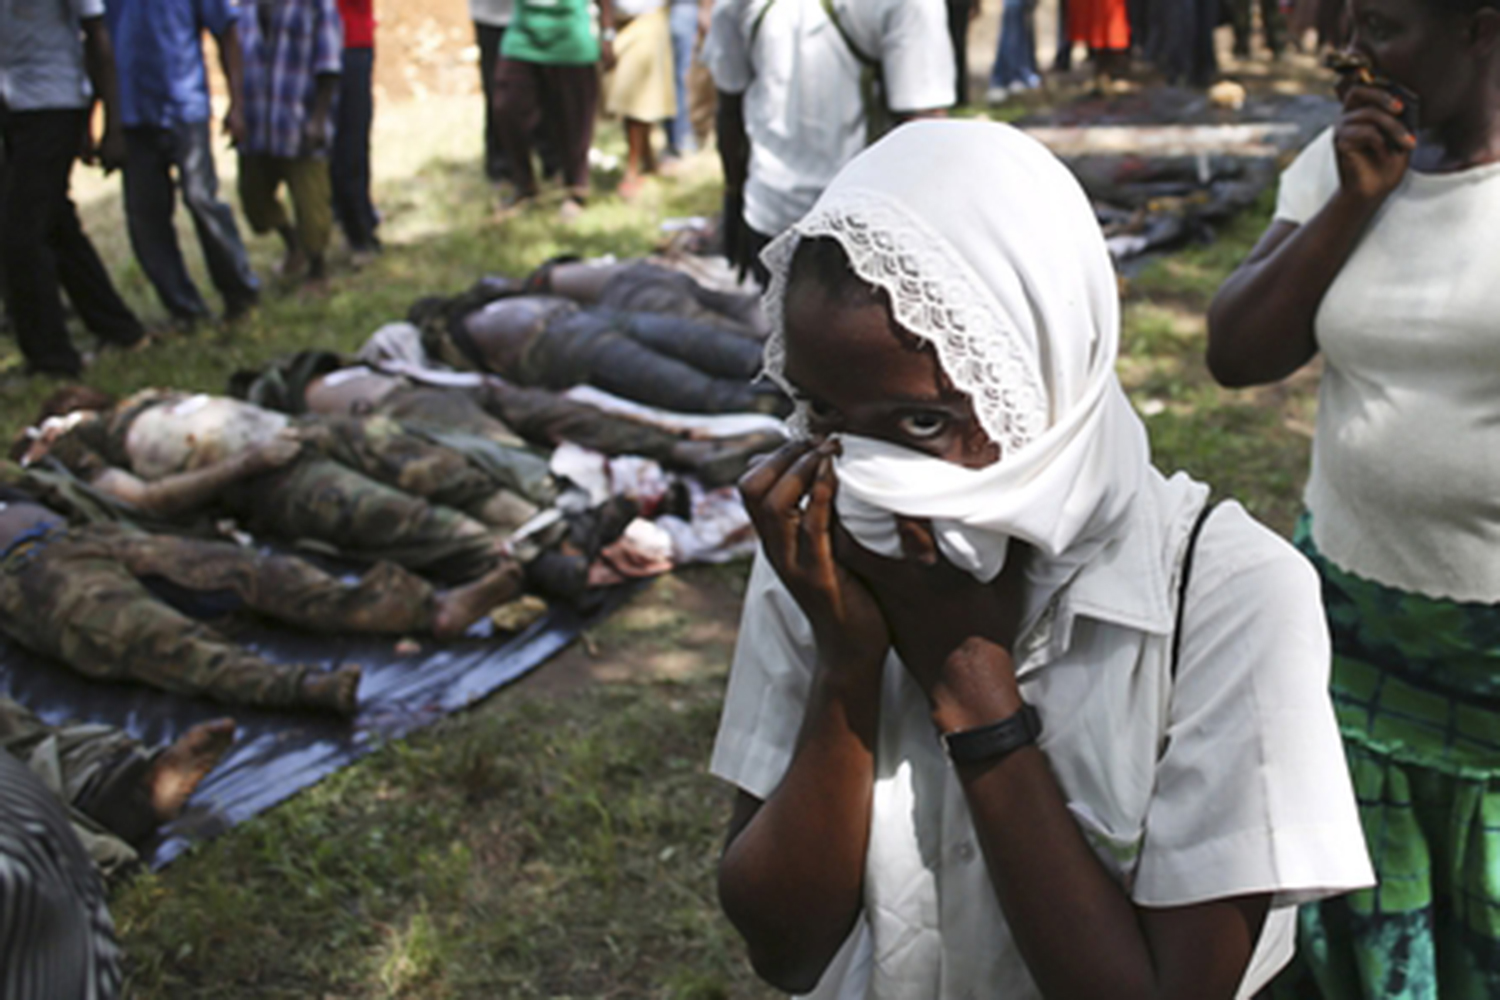 Noche a tiros en Kenia: Al-Shabaab secuestra un pueblo, predica, y ataca un campamento militar